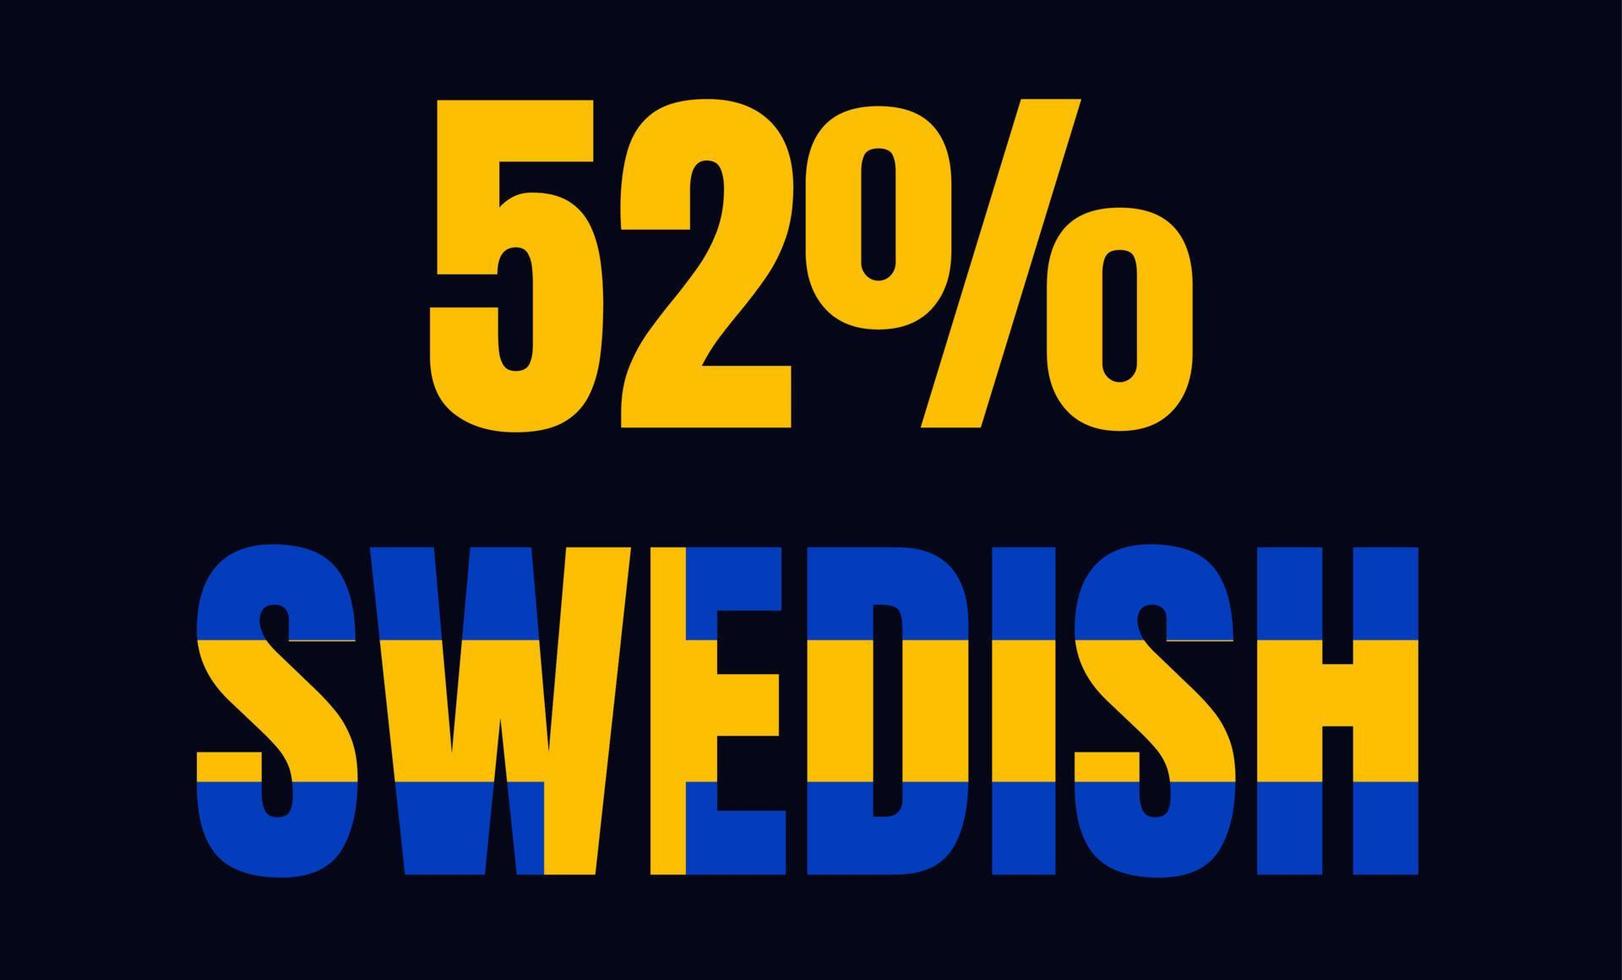 52 procent svensk skyltetikett vektor konstillustration med fantastiskt typsnitt och blågul färg